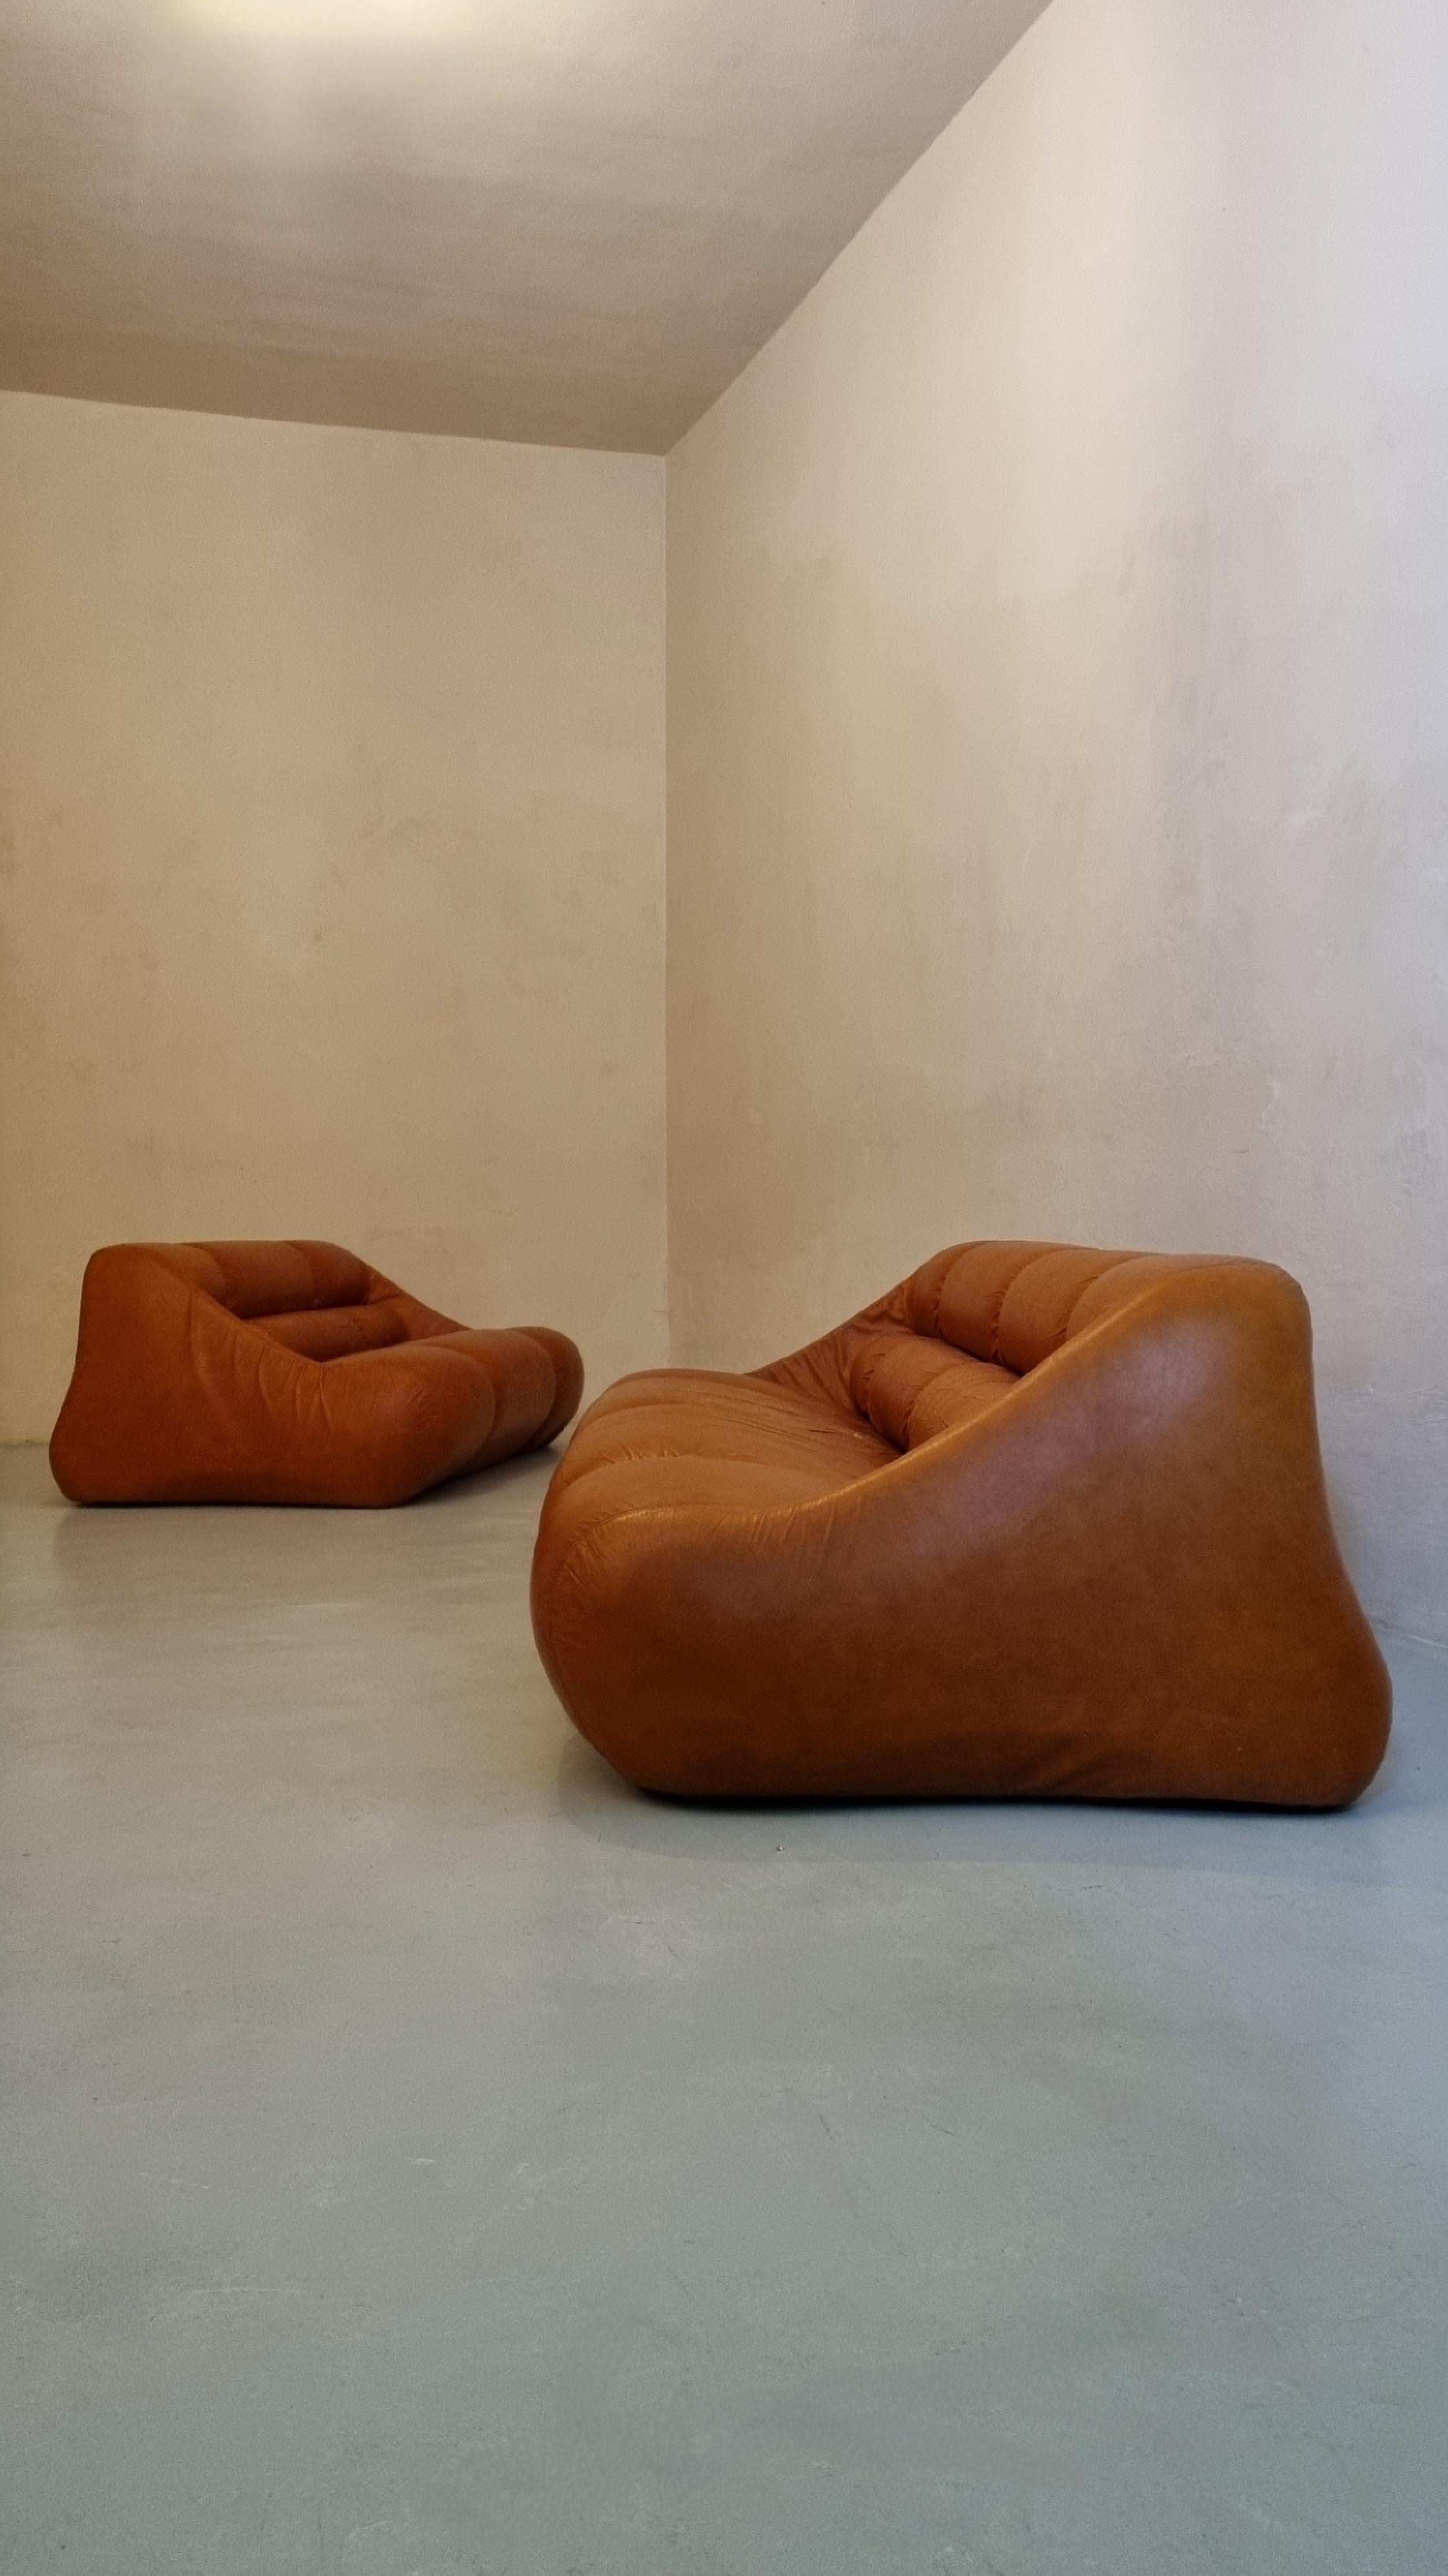 Ciuingam 3 + 2 Sitzer Sofas, entworfen von dem Designer Trio De Pas D' Urbino & Lomazzi für BBB Bonacina im Jahr 1967.
Moosgummi-Pad, Original-Leder, Kunststoff.
Guter Zustand, die Haut ist im Sitzen leicht abgenutzt.
Jonathan De Pas (Mailand 1932 -